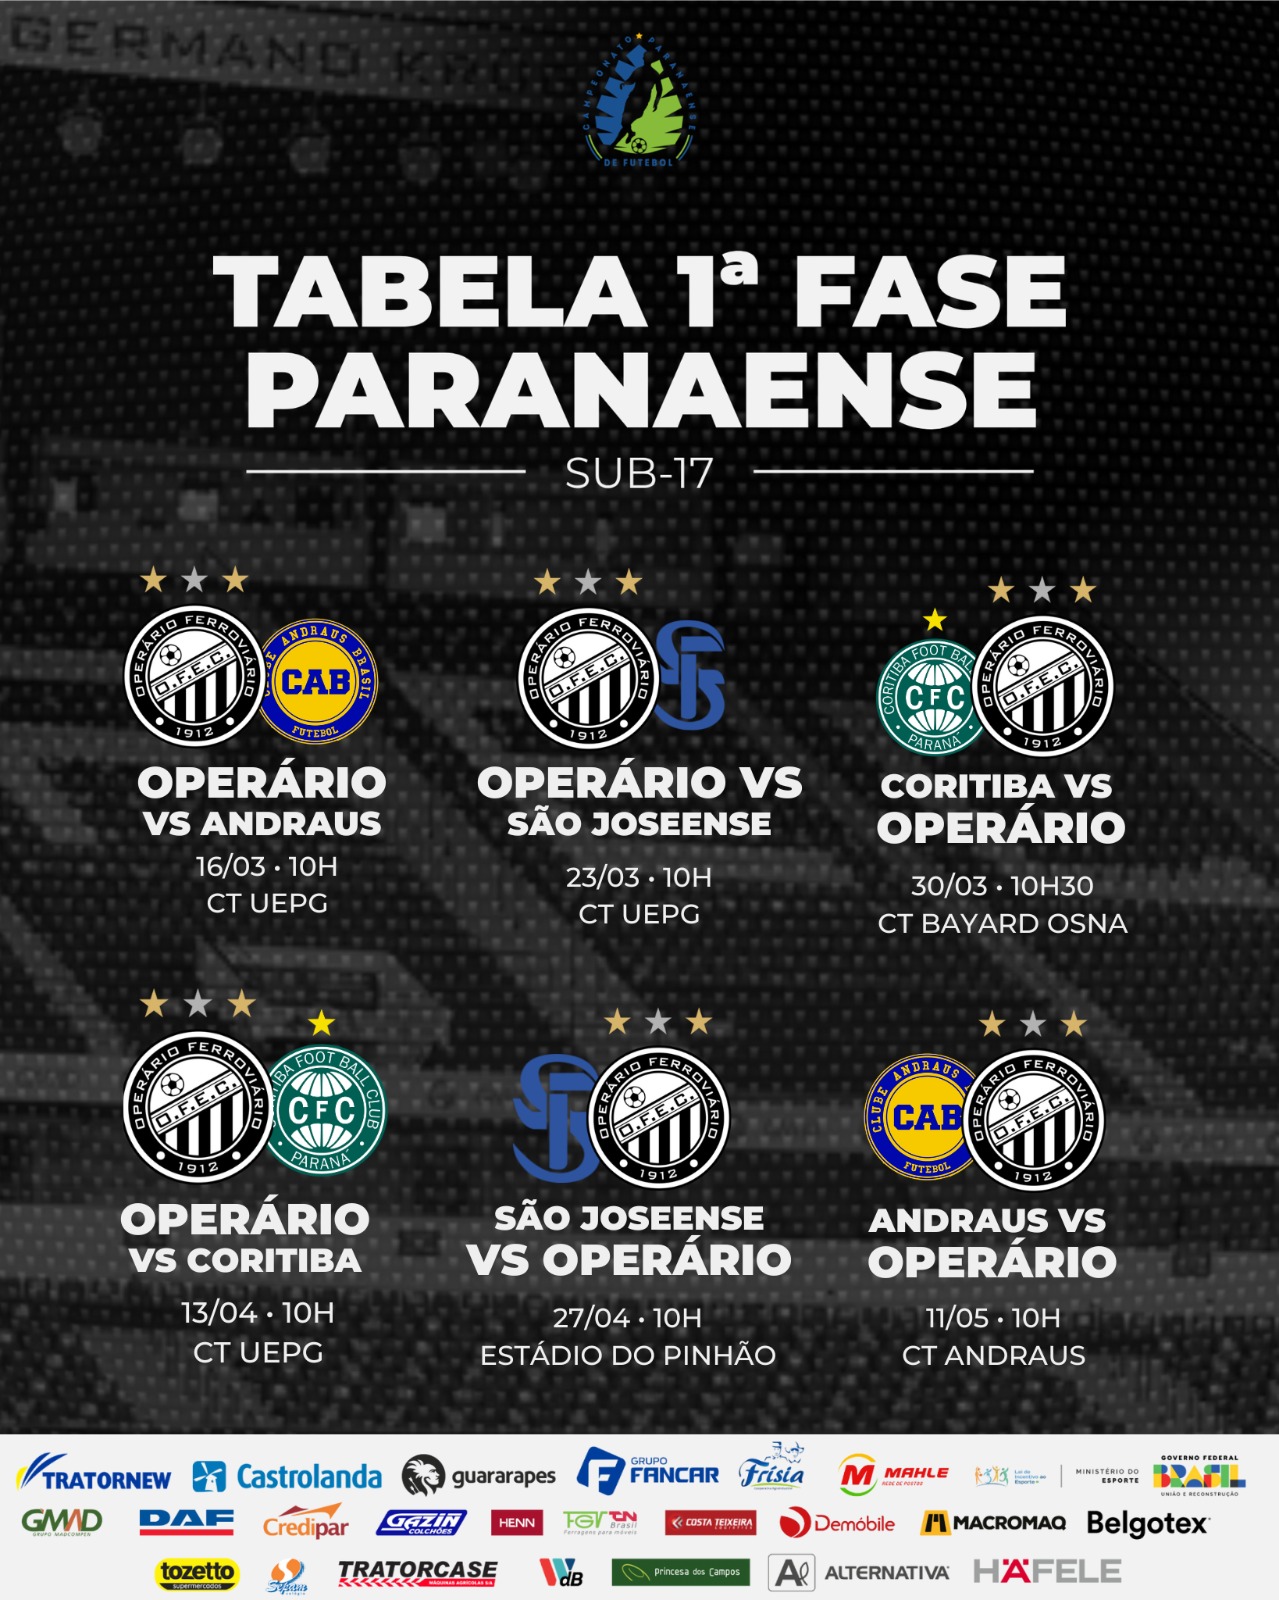 Confira a tabela completa do Operário no Campeonato Paranaense Sub-17.